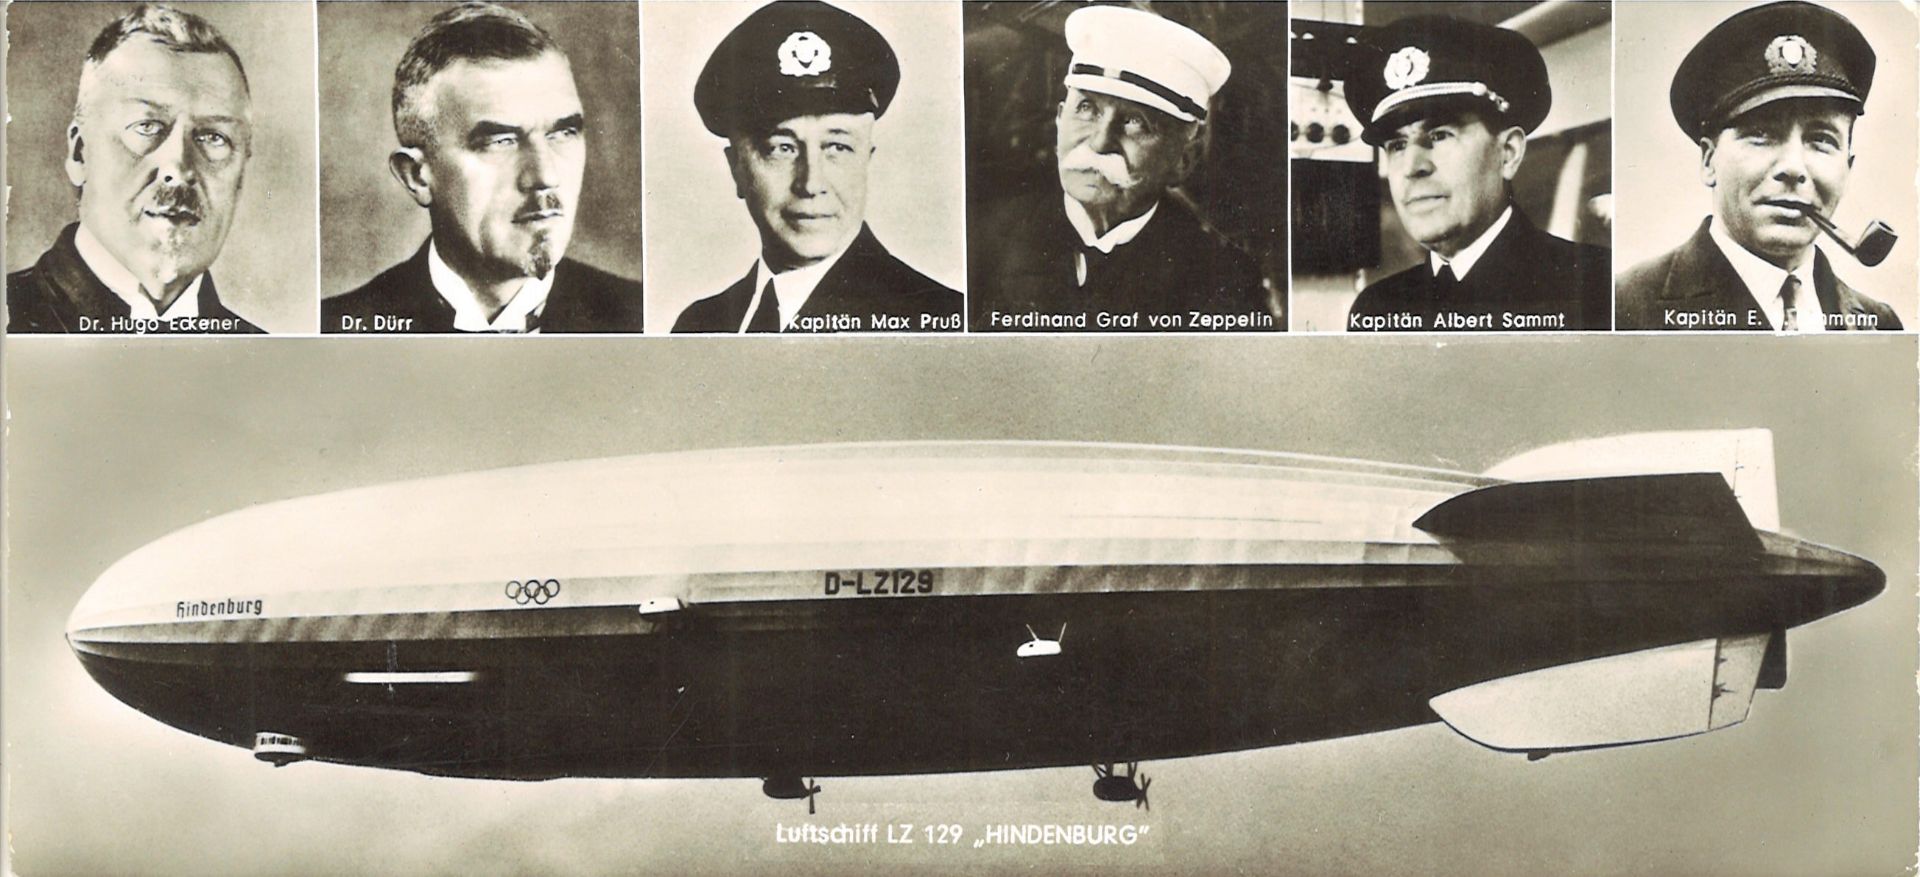 Zeppelin - Postkarte: Olymp. Luftschiff LZ 129 "Hindenburg" mit Bildern von den Kapitänen Dr. Hugo